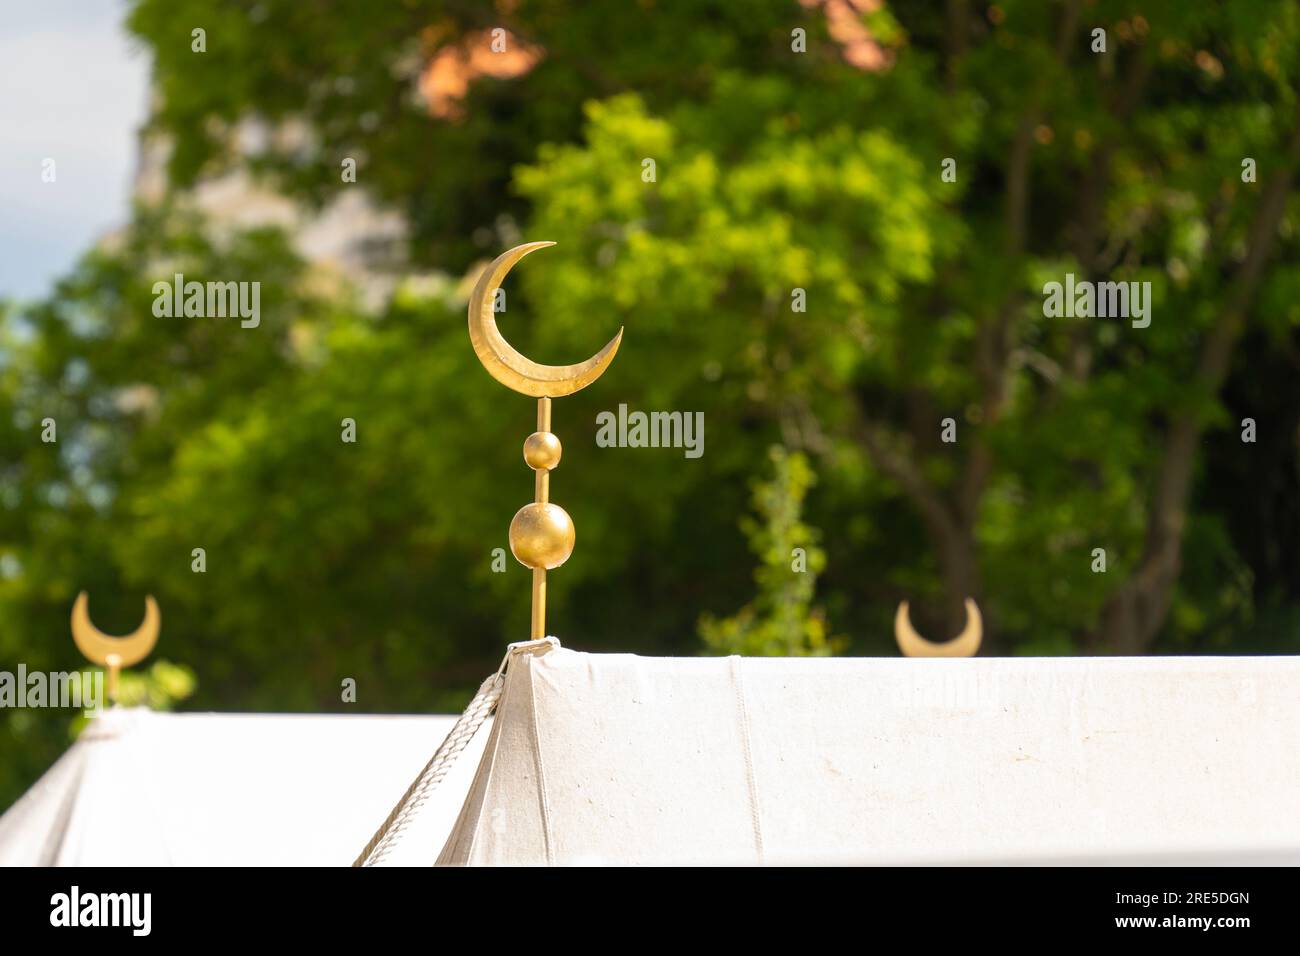 Simbolo turco a mezzaluna su una tenda bianca all'aperto Foto Stock